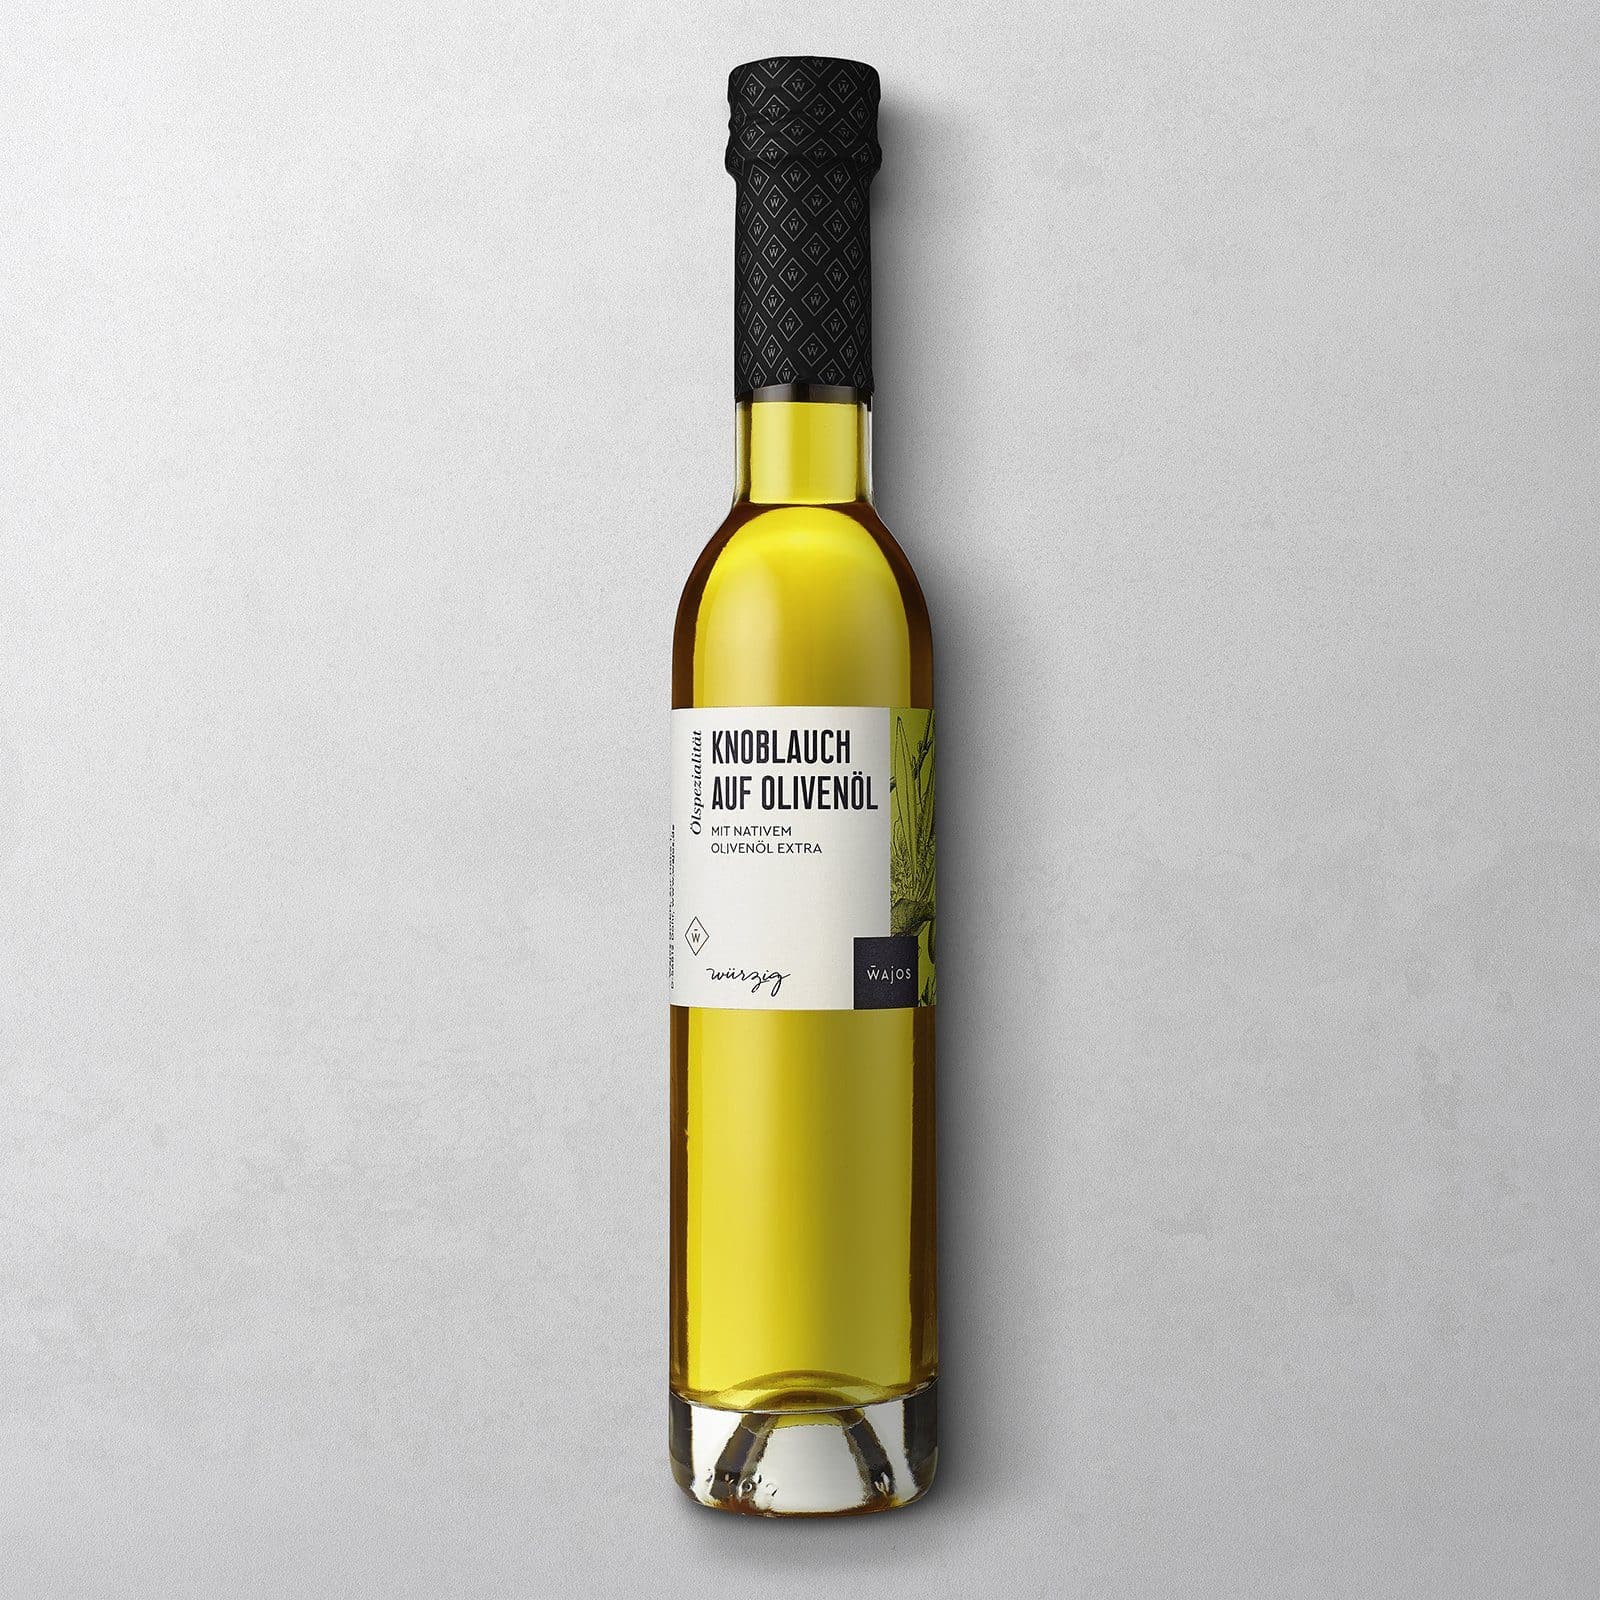 Knoblauch auf Olivenöl 100ml - Olivenölzubereitung